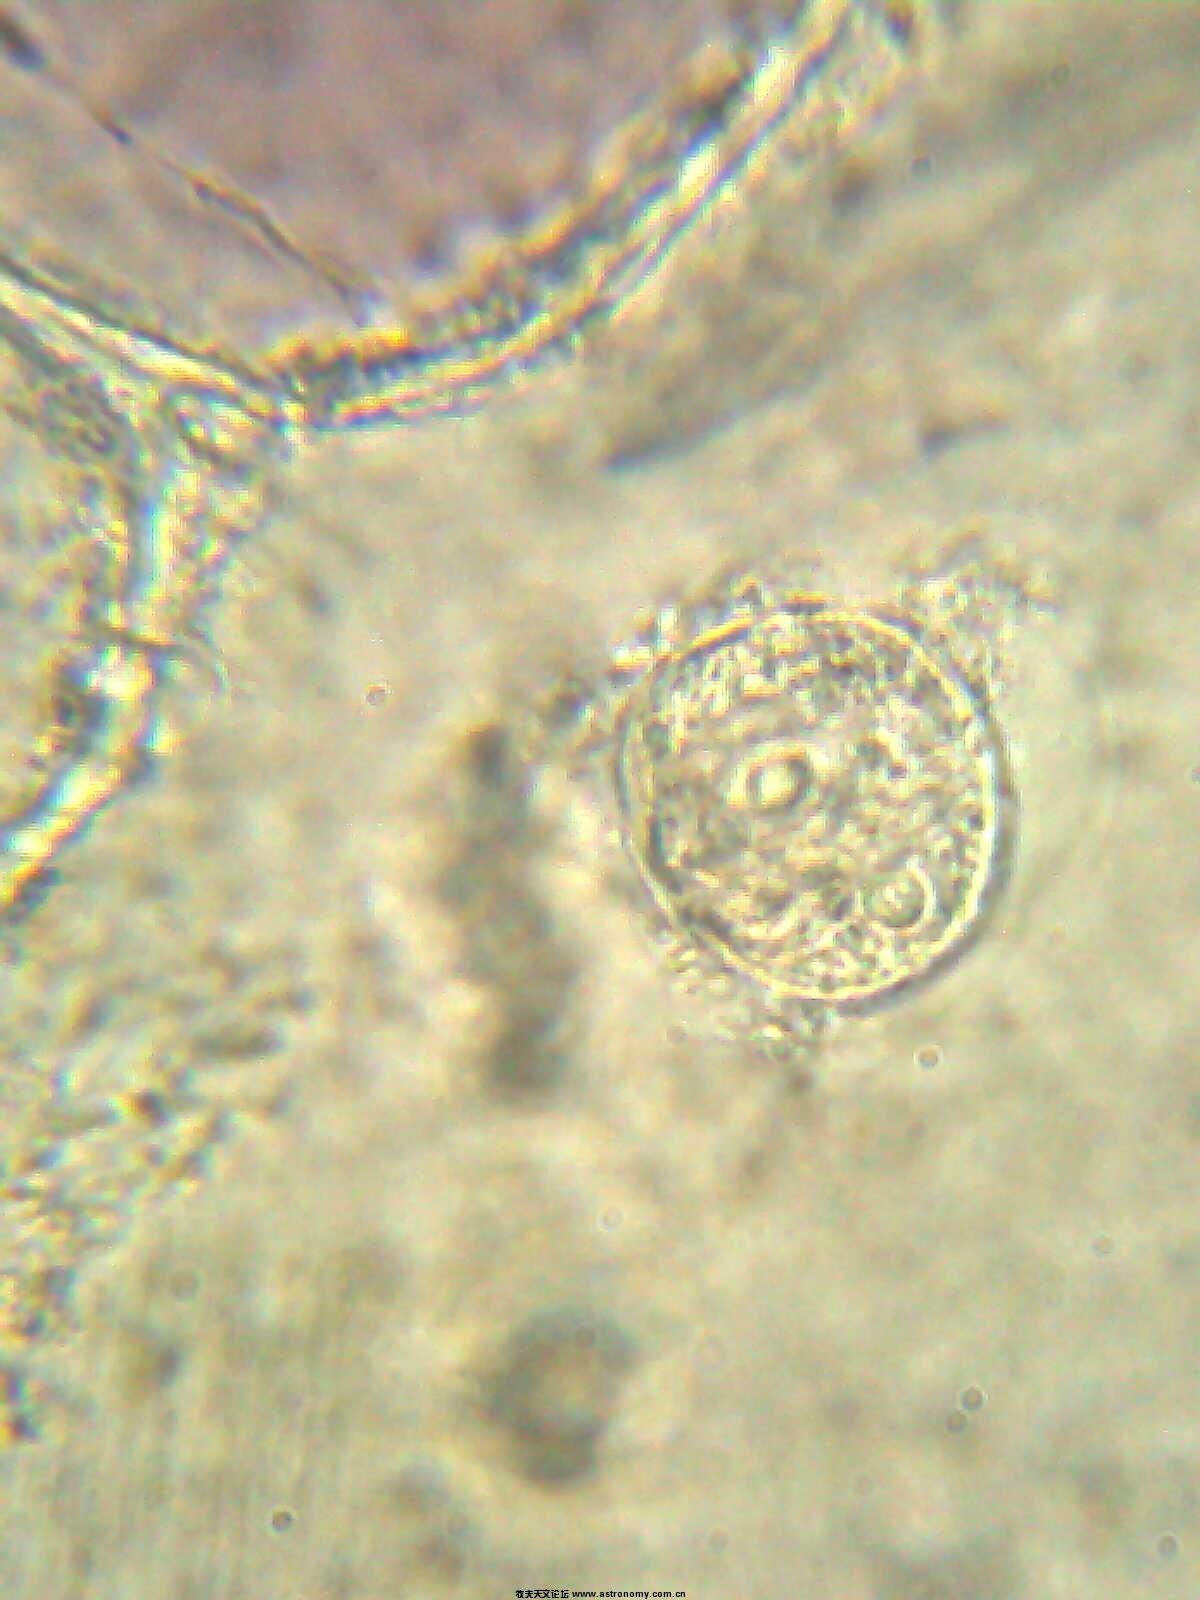 细胞壁细胞核.jpg